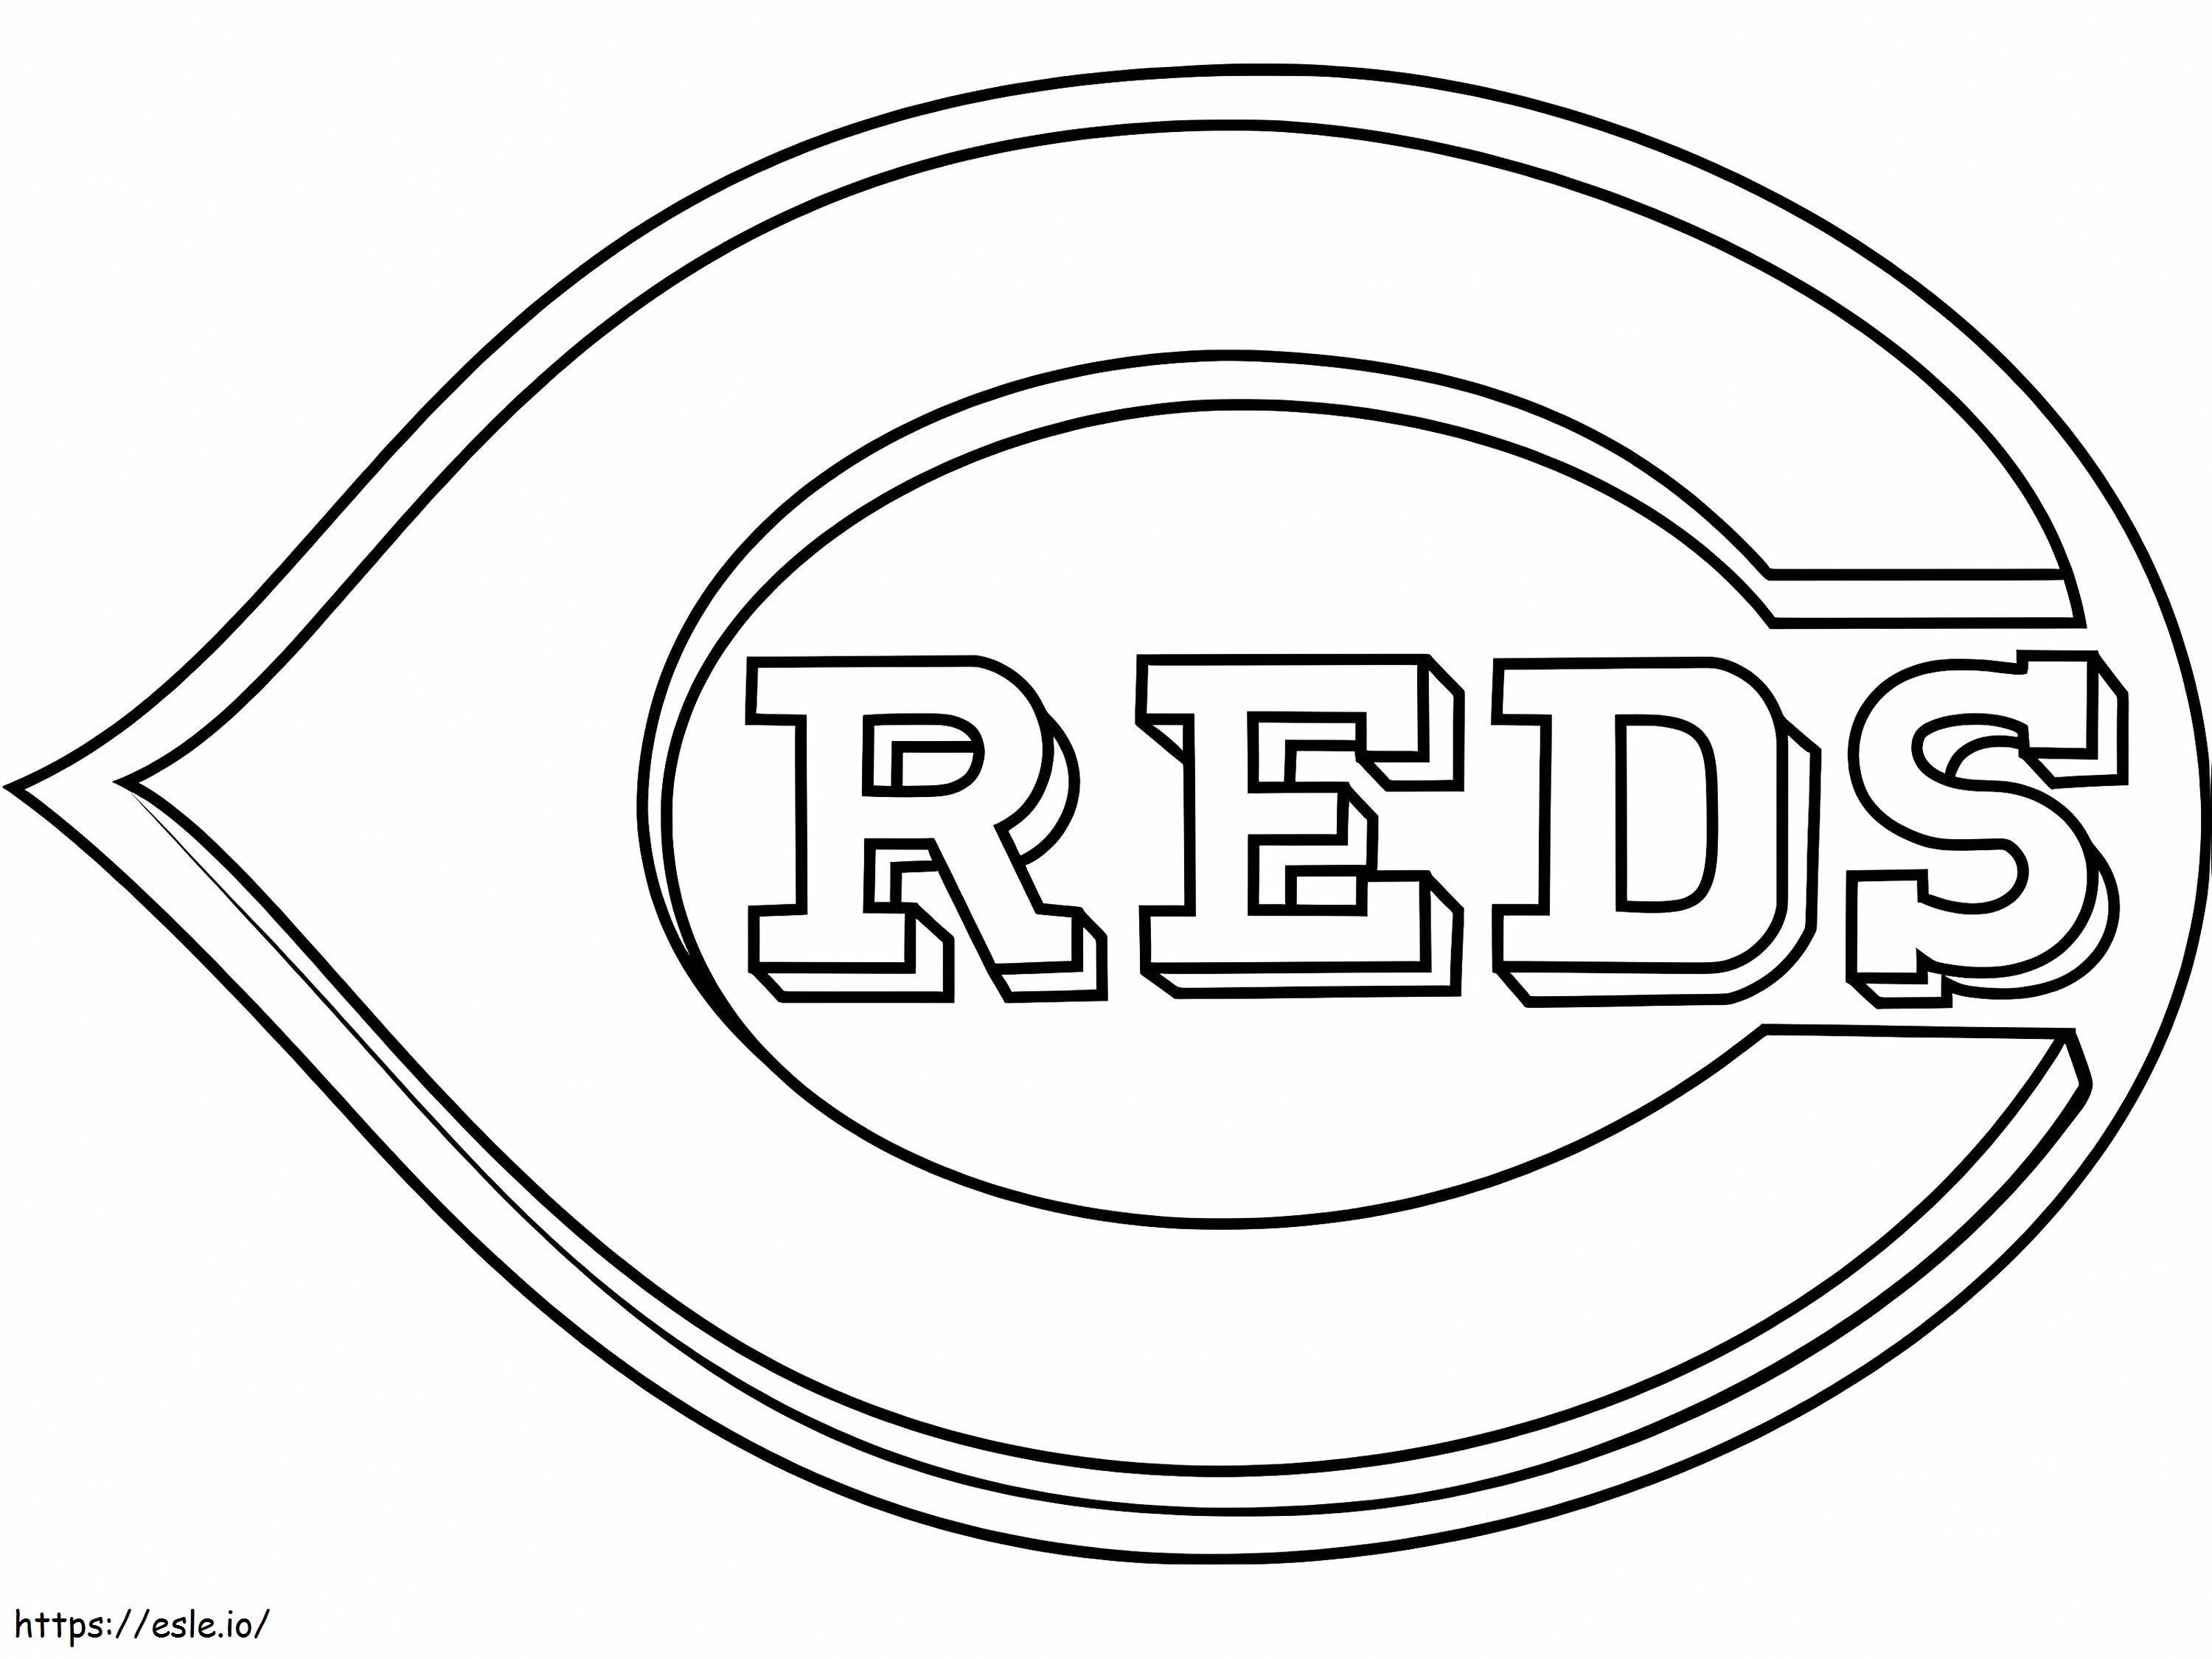 Sigla Cincinnati Reds de colorat